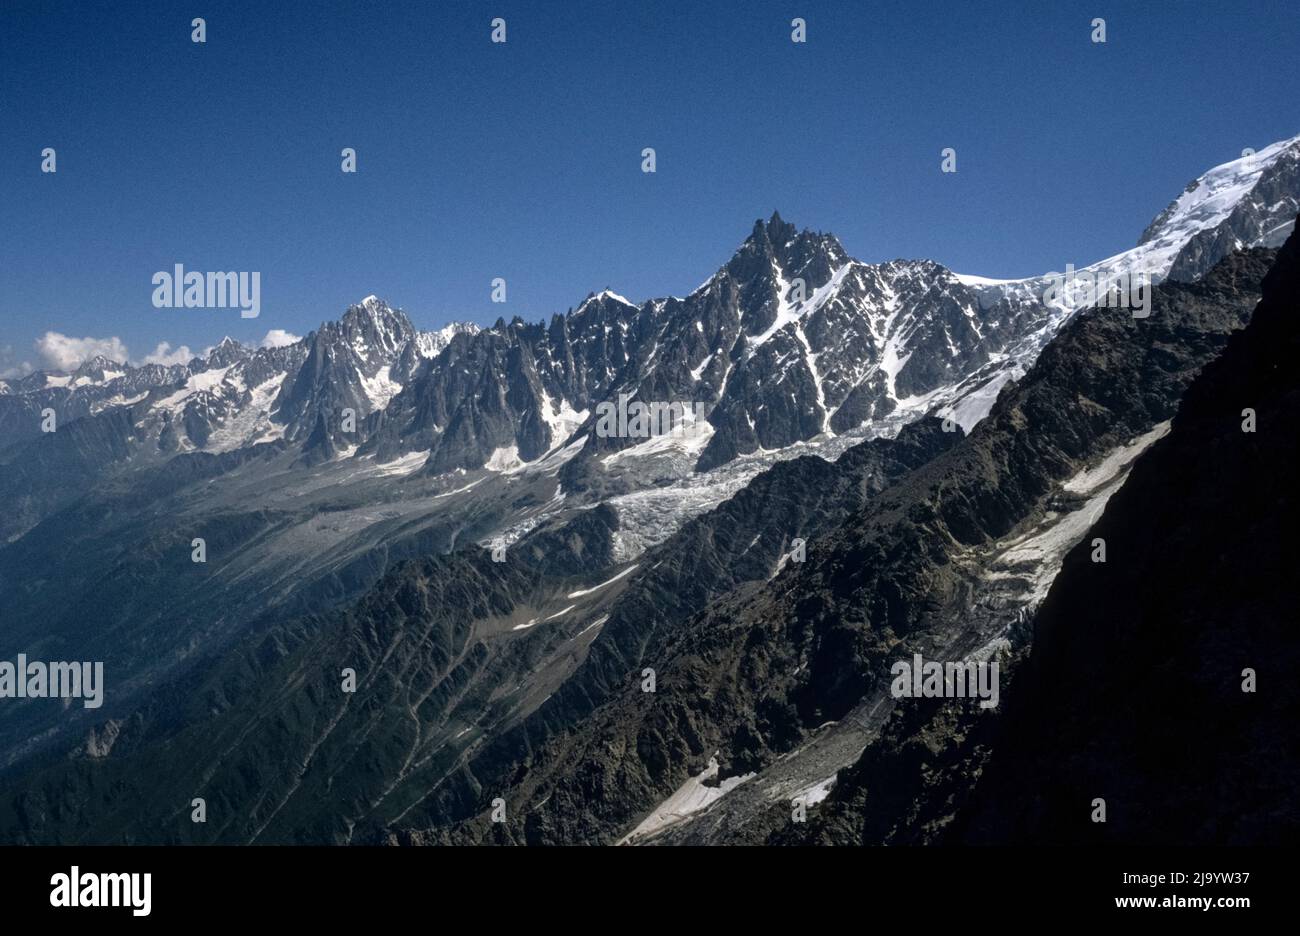 Mont Blanc massif with Aiguille du Midi, Glacier des Bossons and Aiguilles de Chamonix seen near Nid d'Aigle, Saint-Gervais-les-Bains, France, 1990 Stock Photo